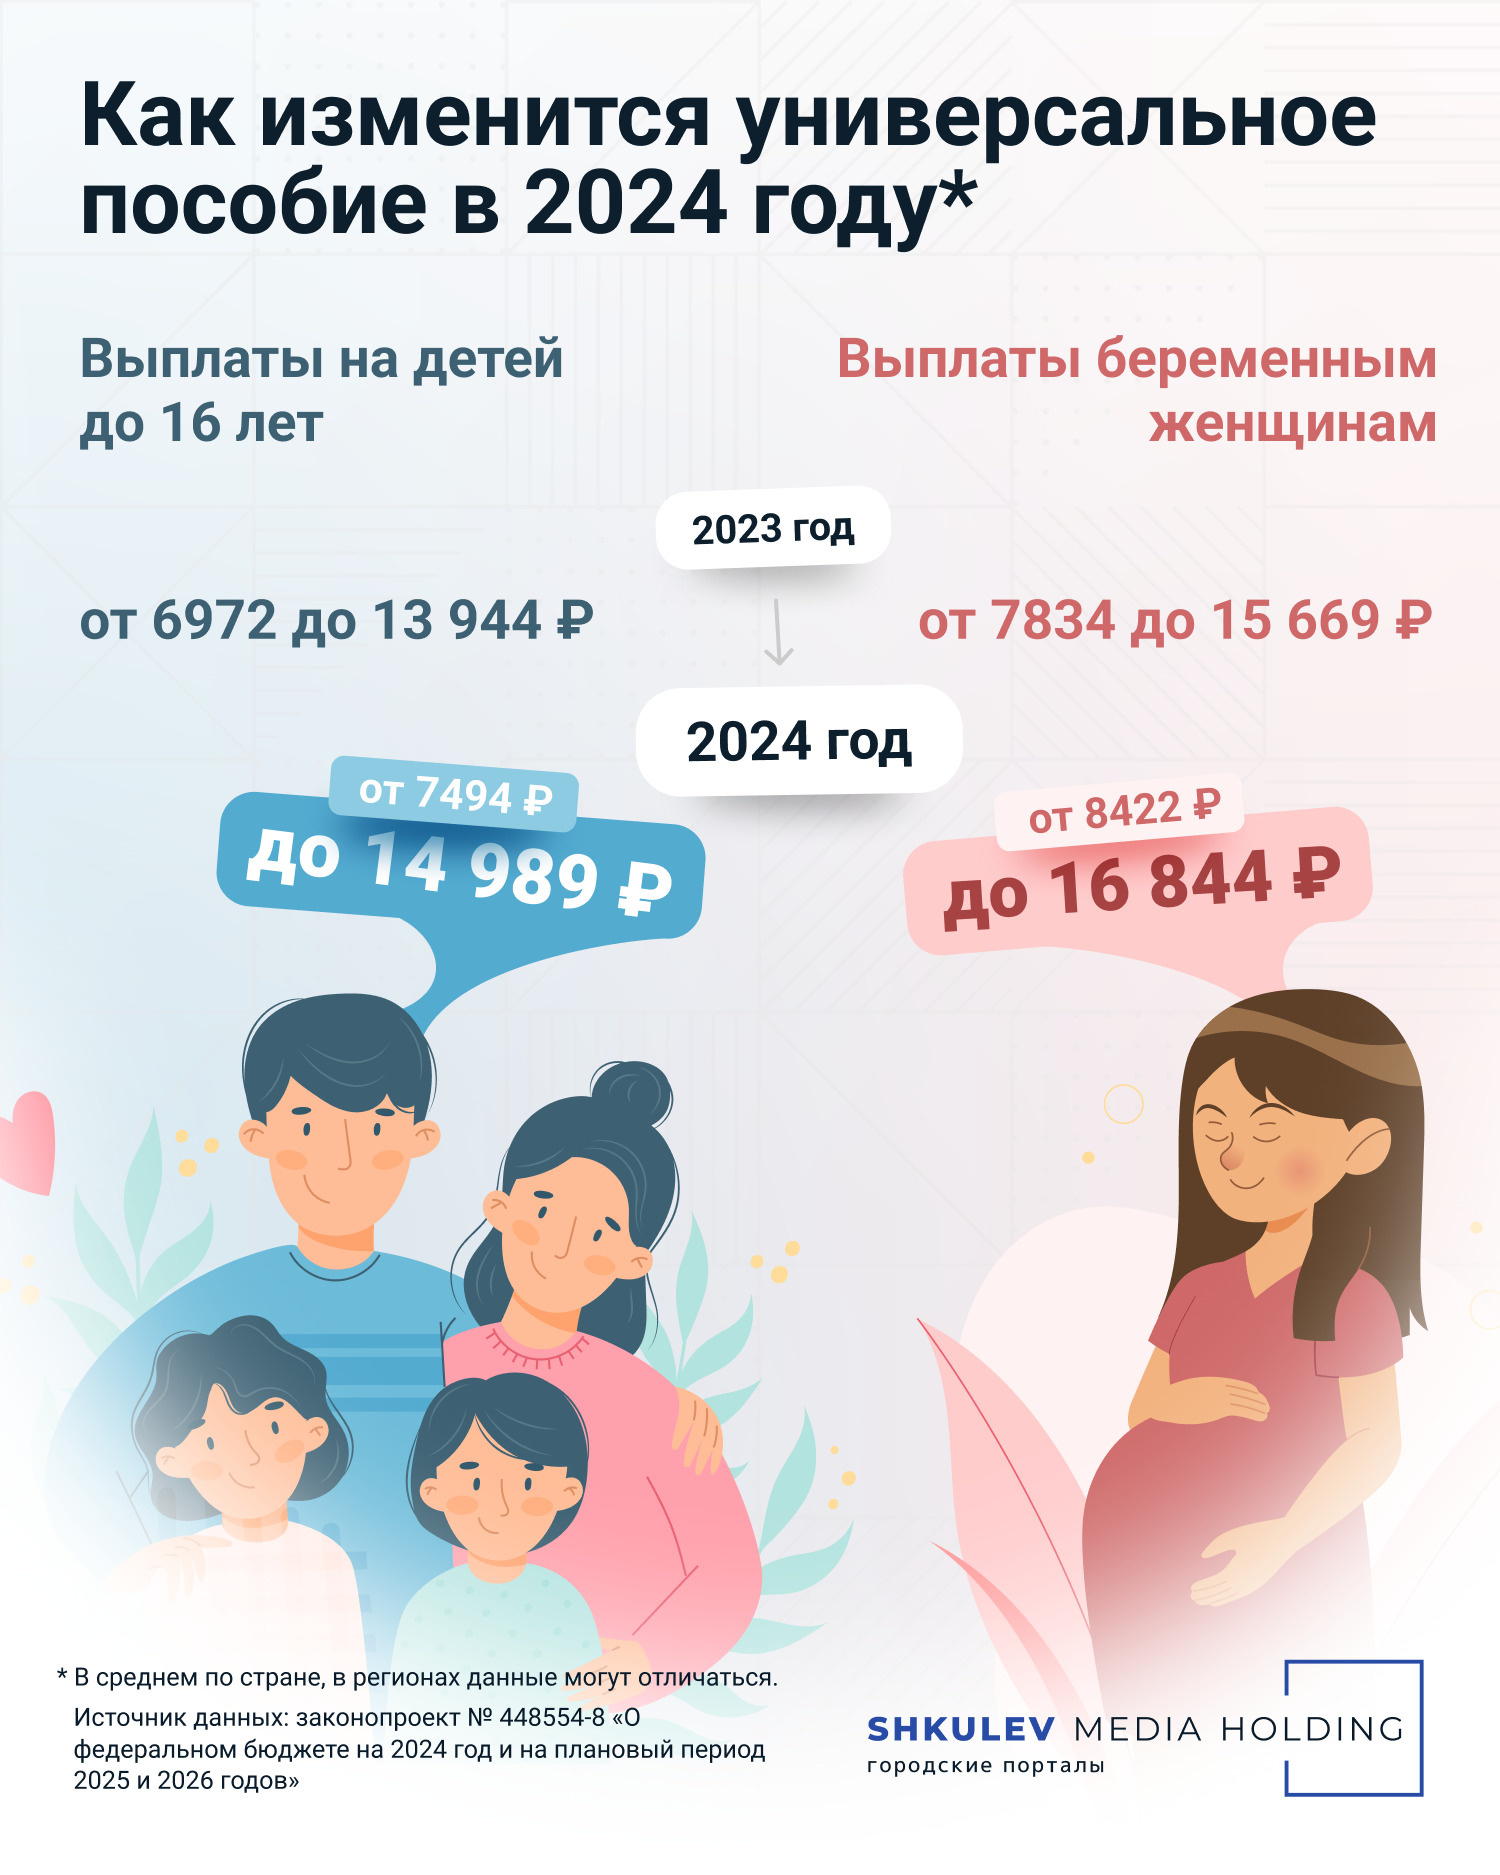 Размер универсального пособия на ребенка и пособия беременным в 2024 году -  28 ноября 2023 - ЧИТА.ру